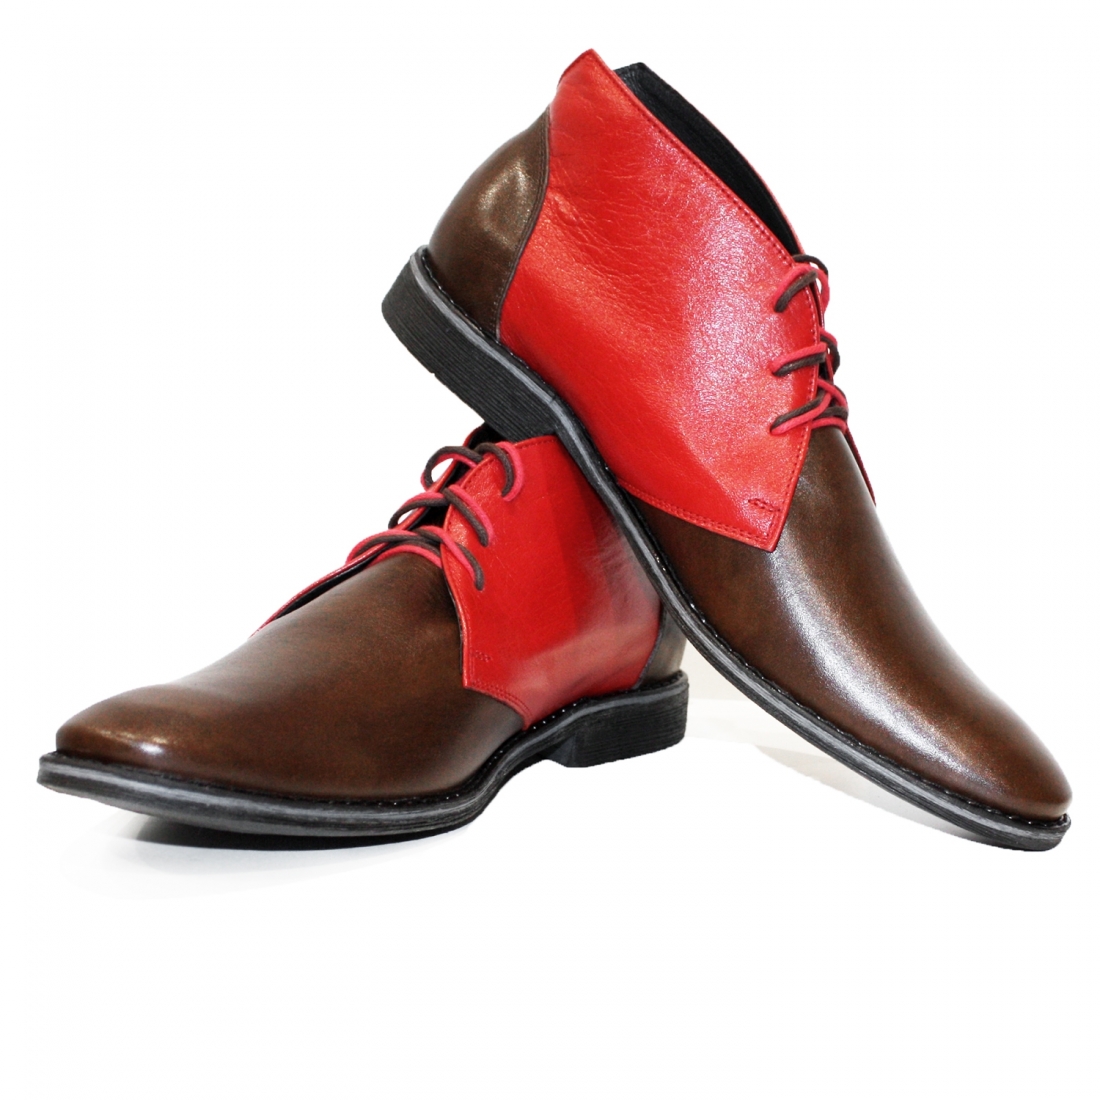 Modello Trinitollo -  Chukka Stiefel - Handmade Colorful Italian Leather Shoes